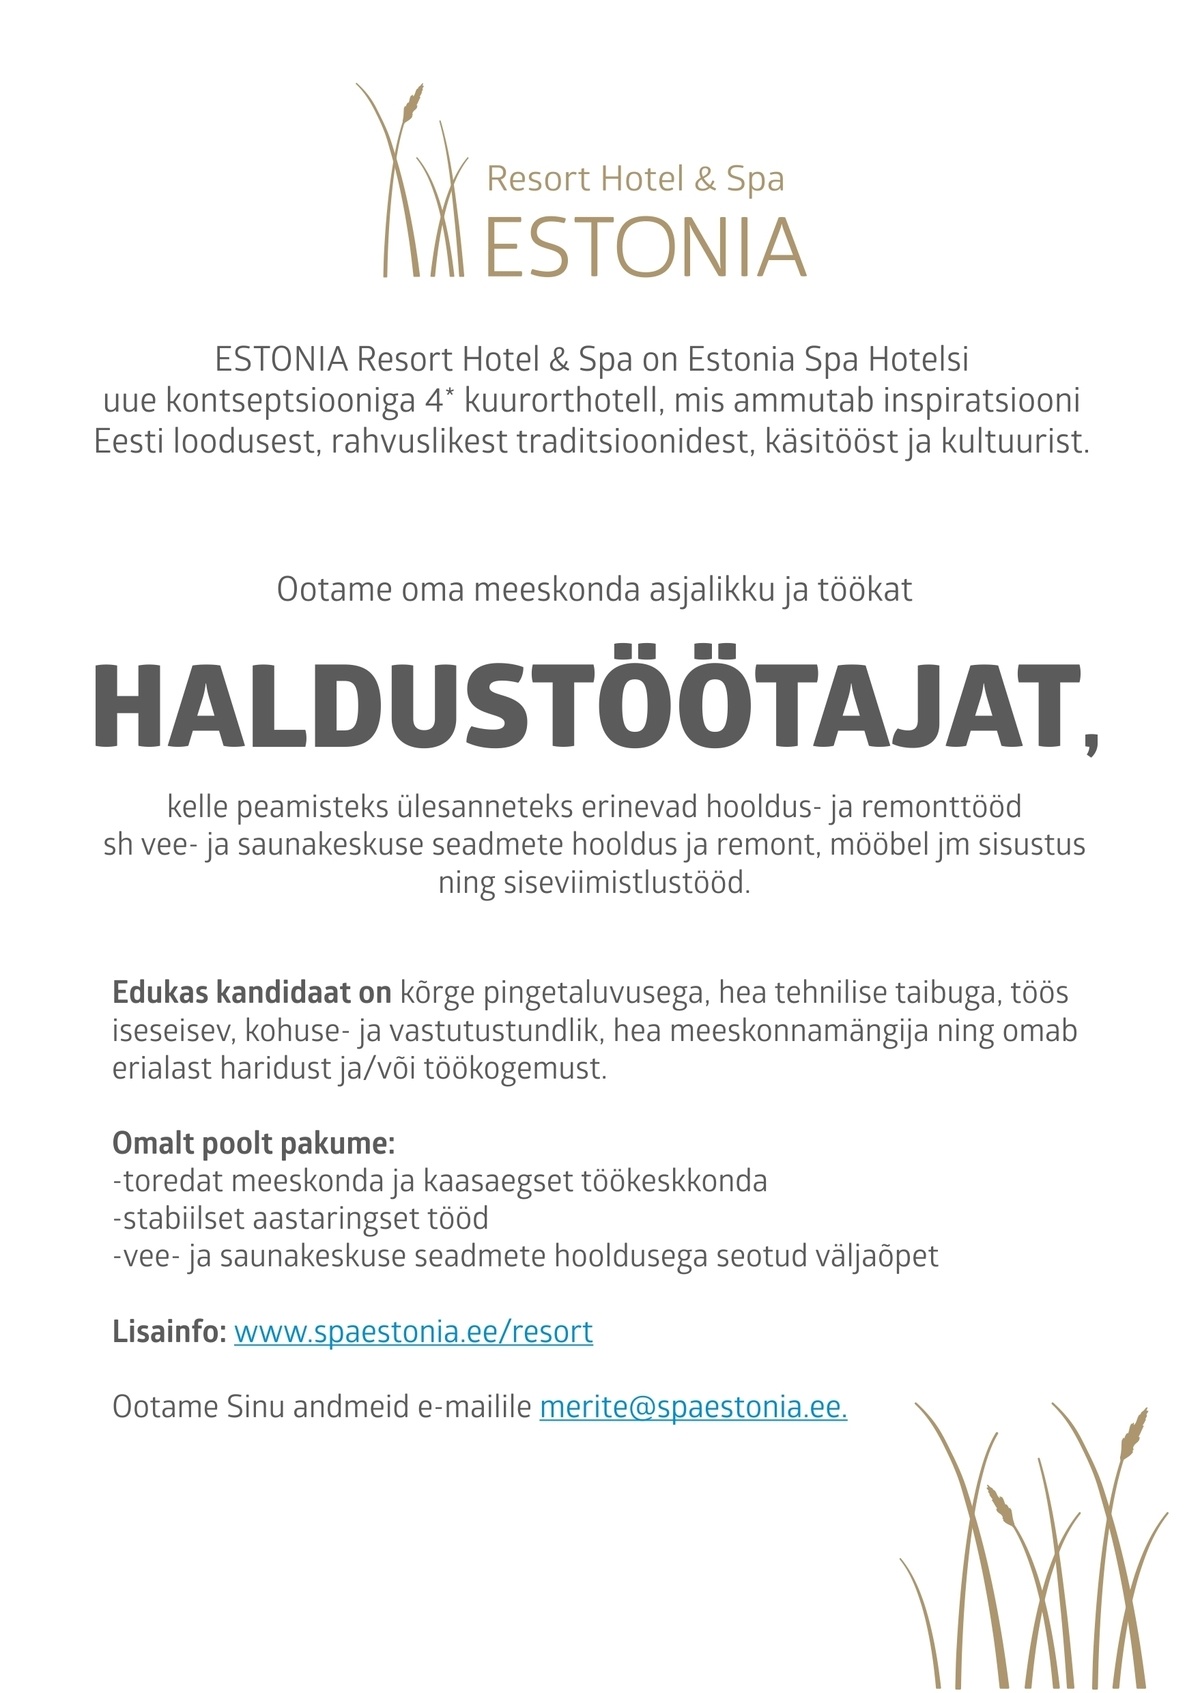 Estonia Spa Hotels AS Haldustöötaja